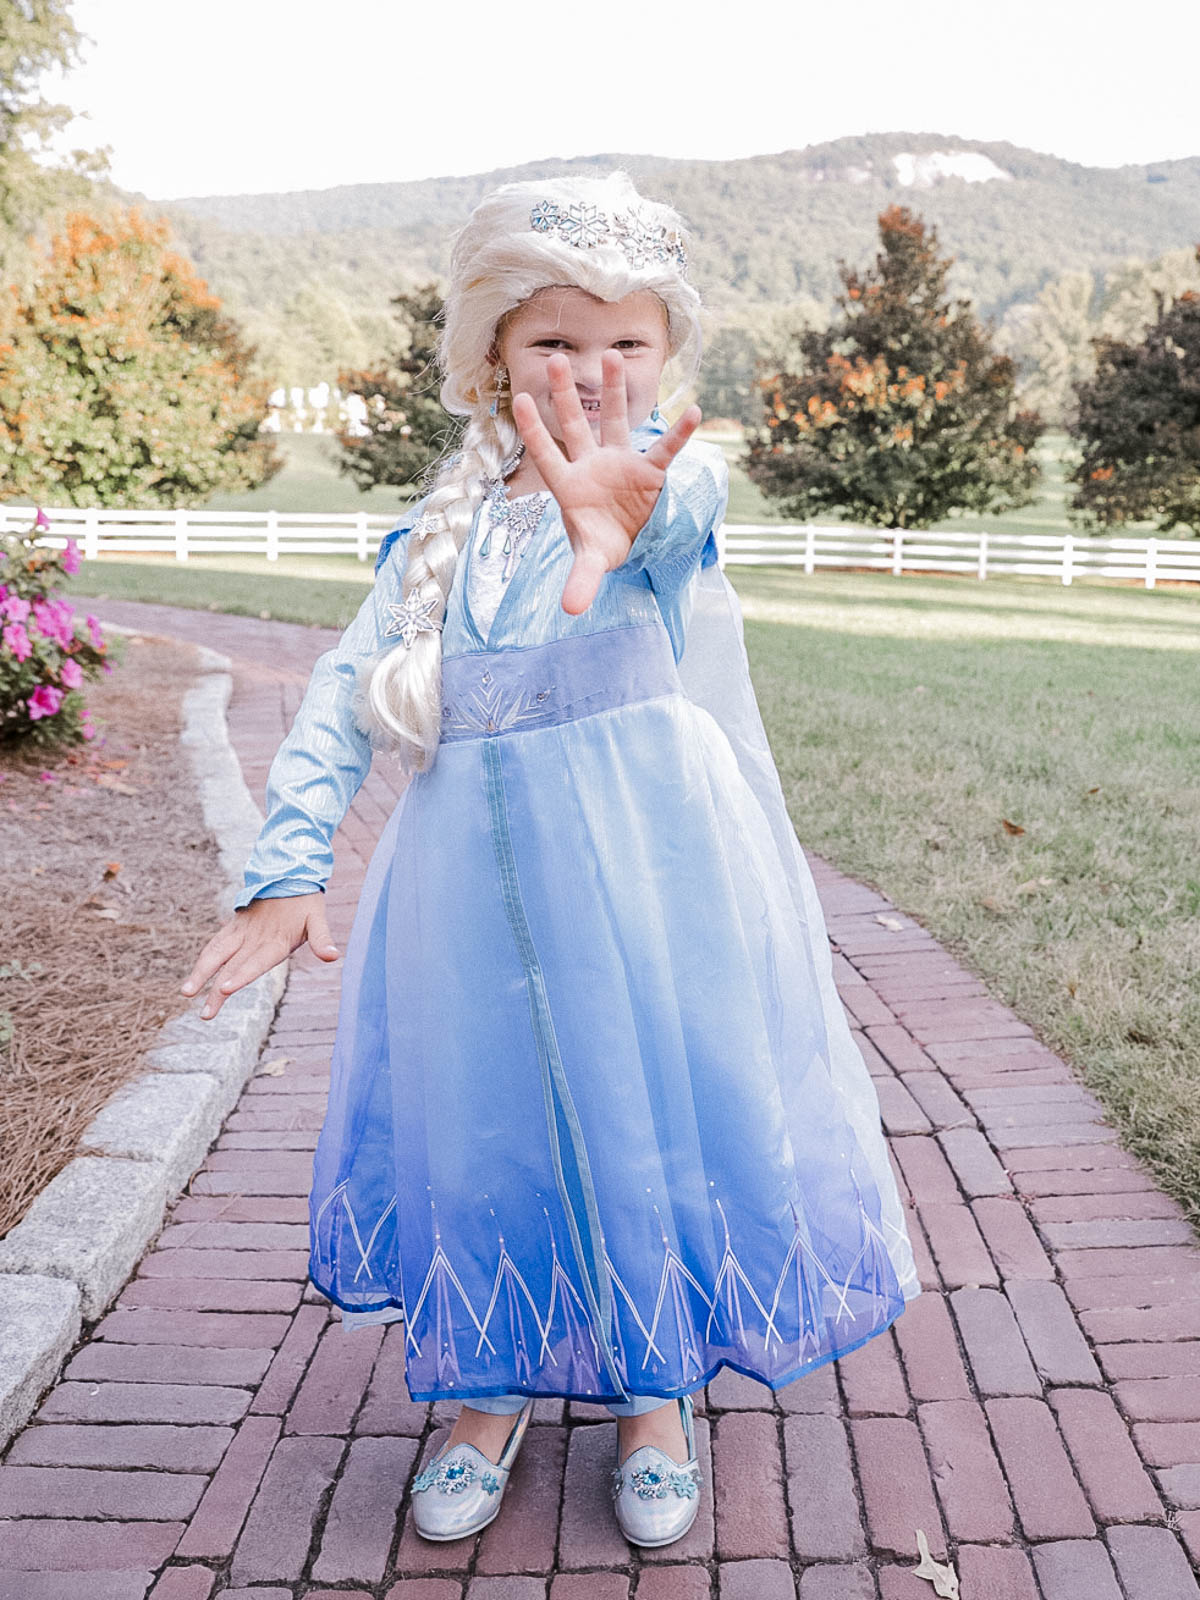 Scottie in her Elsa Costume